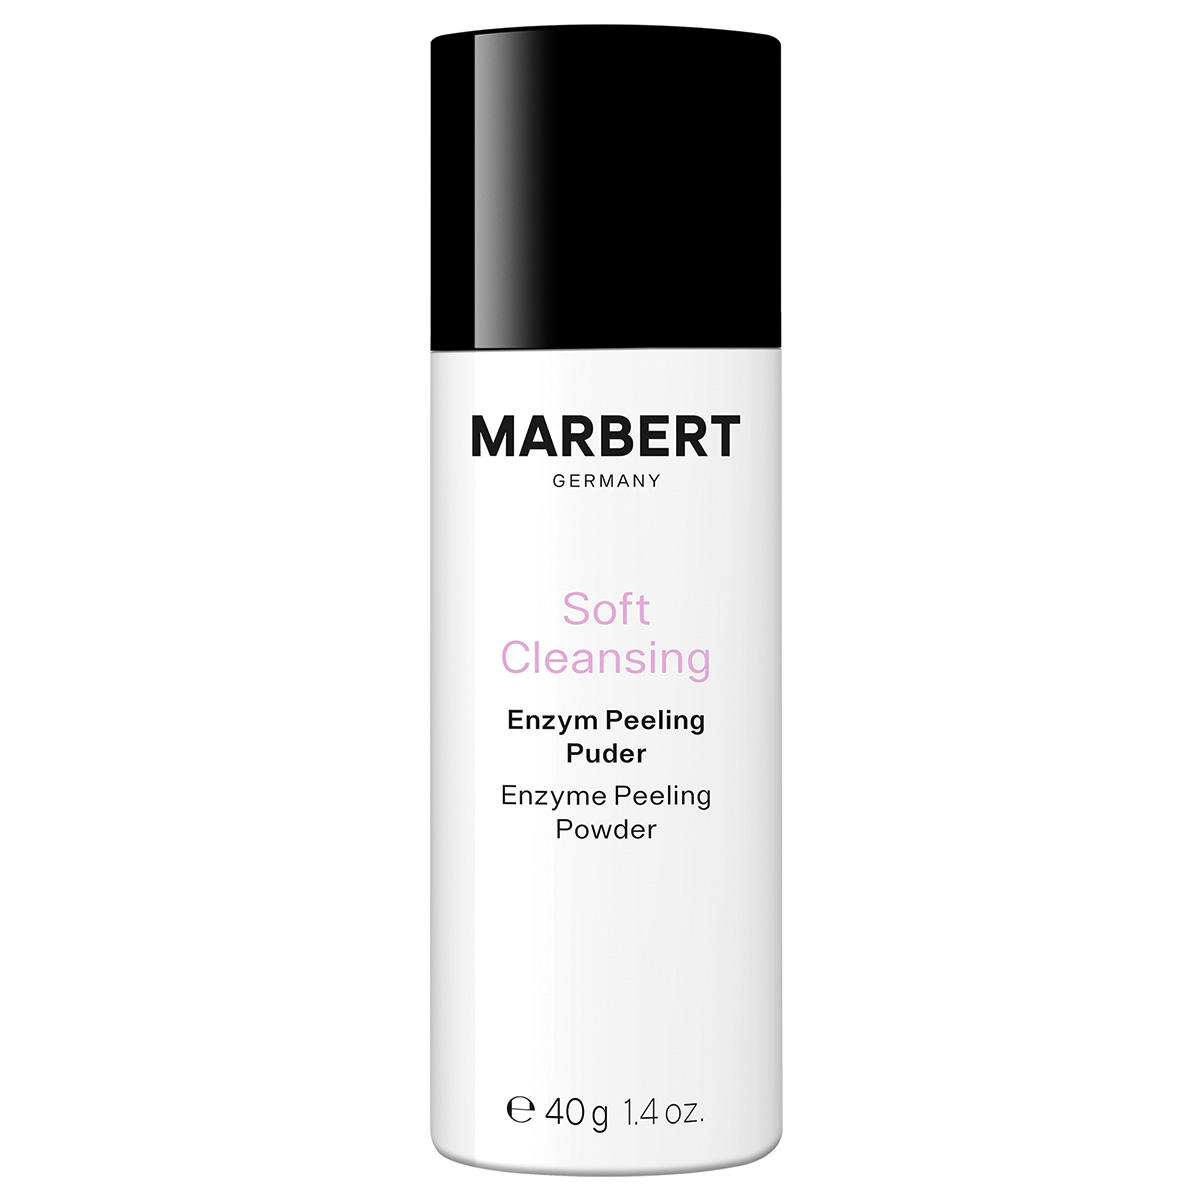 Marbert Soft Cleansing Enzym Peeling Puder 40 g - 1